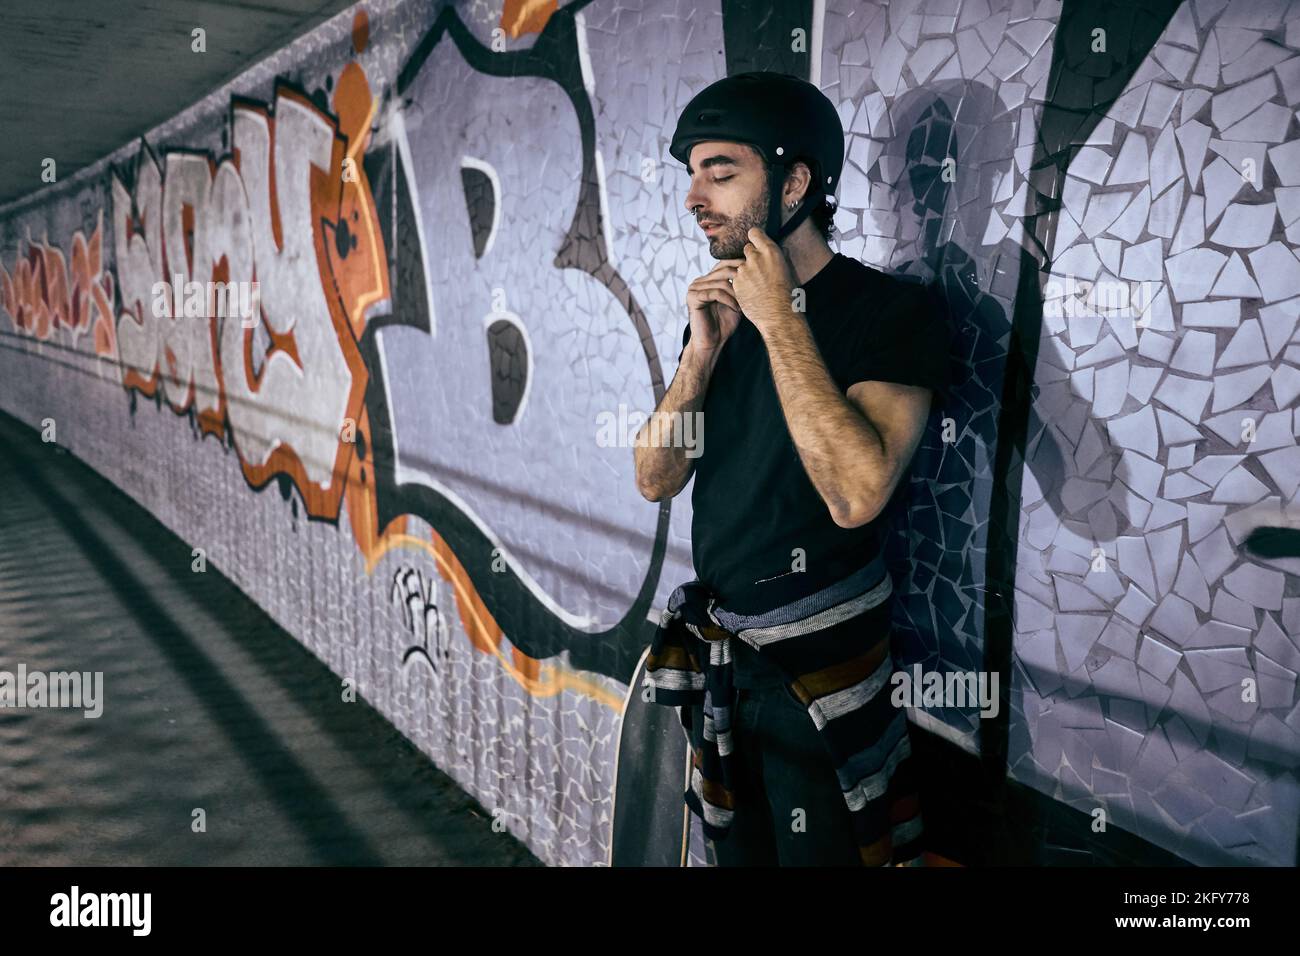 Der junge kaukasische Mann steht und bindet den Helm, den er auf seinem Kopf trägt, an der Wand eines Tunnels neben einem Skateboard in der Stadt gelehnt Stockfoto